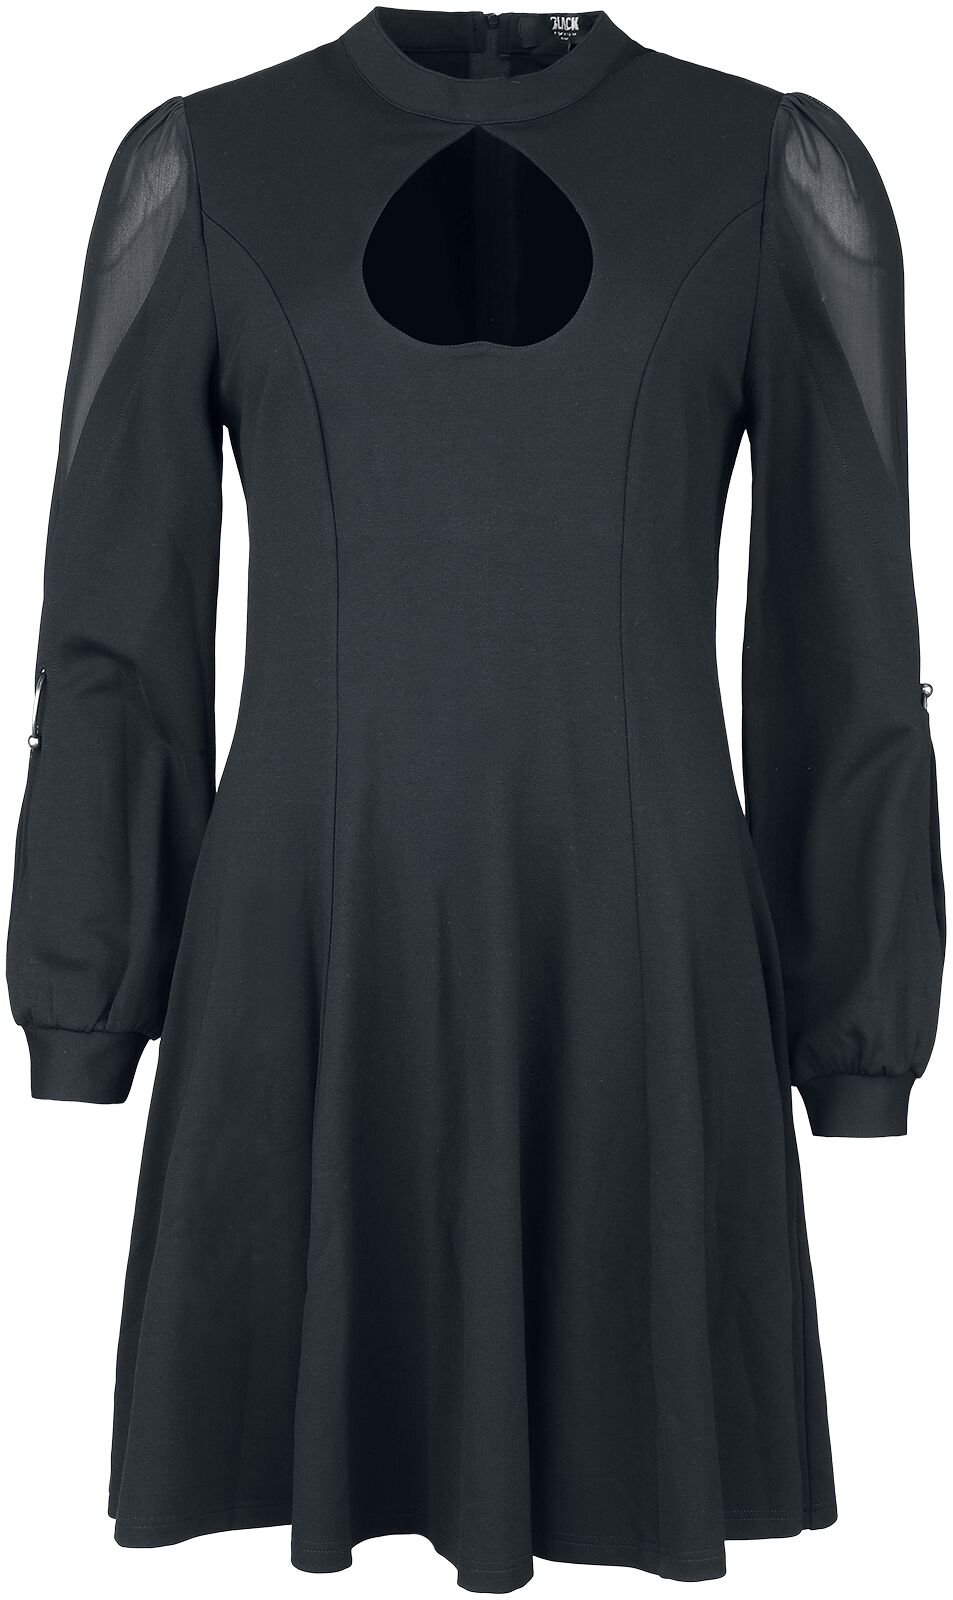 Black Premium by EMP Kurzes Kleid Kleid mit Herz Ausschnitt S bis L für Damen Größe M schwarz  - Onlineshop EMP